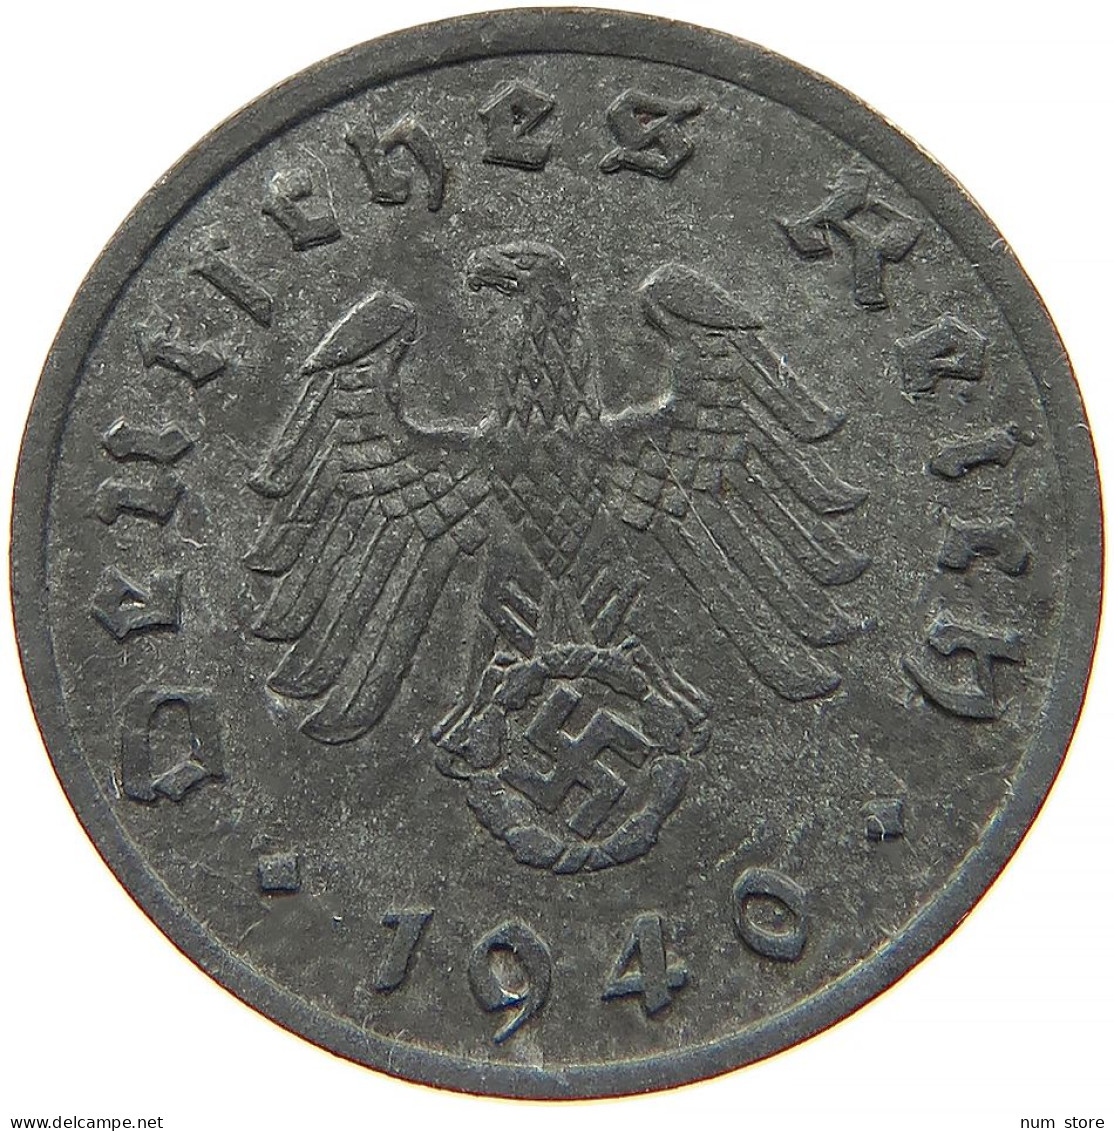 GERMANY 1 REICHSPFENNIG 1940 A #s091 1035 - 1 Reichspfennig